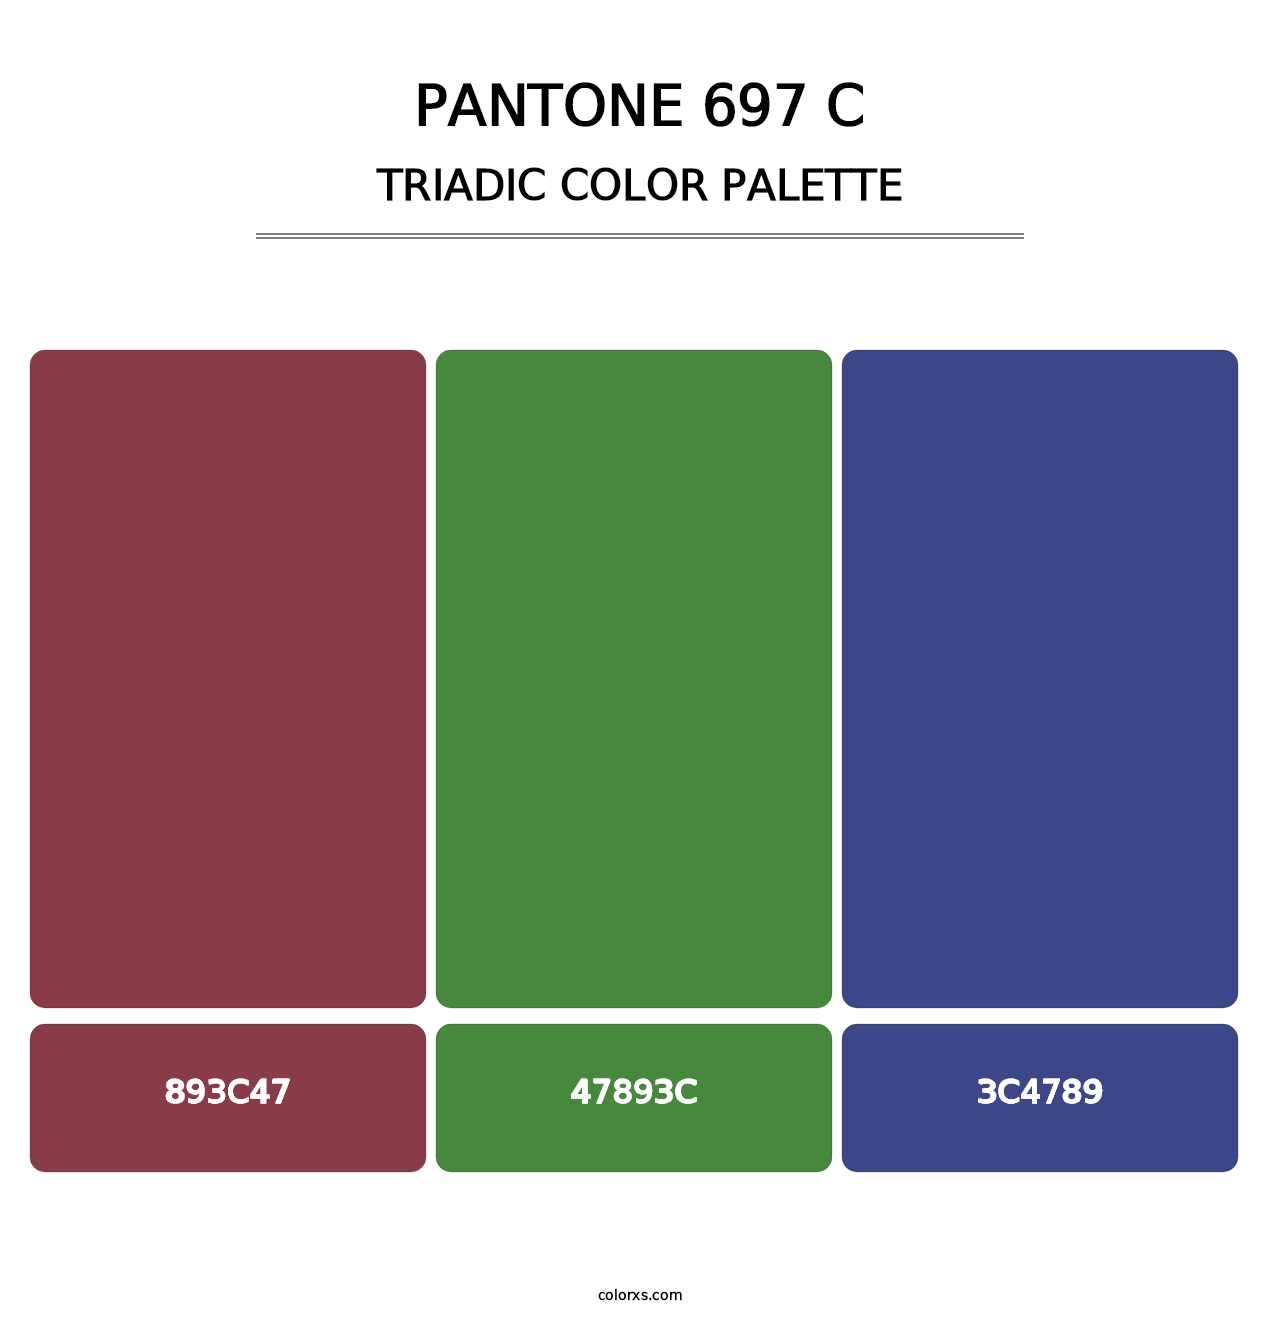 PANTONE 697 C - Triadic Color Palette